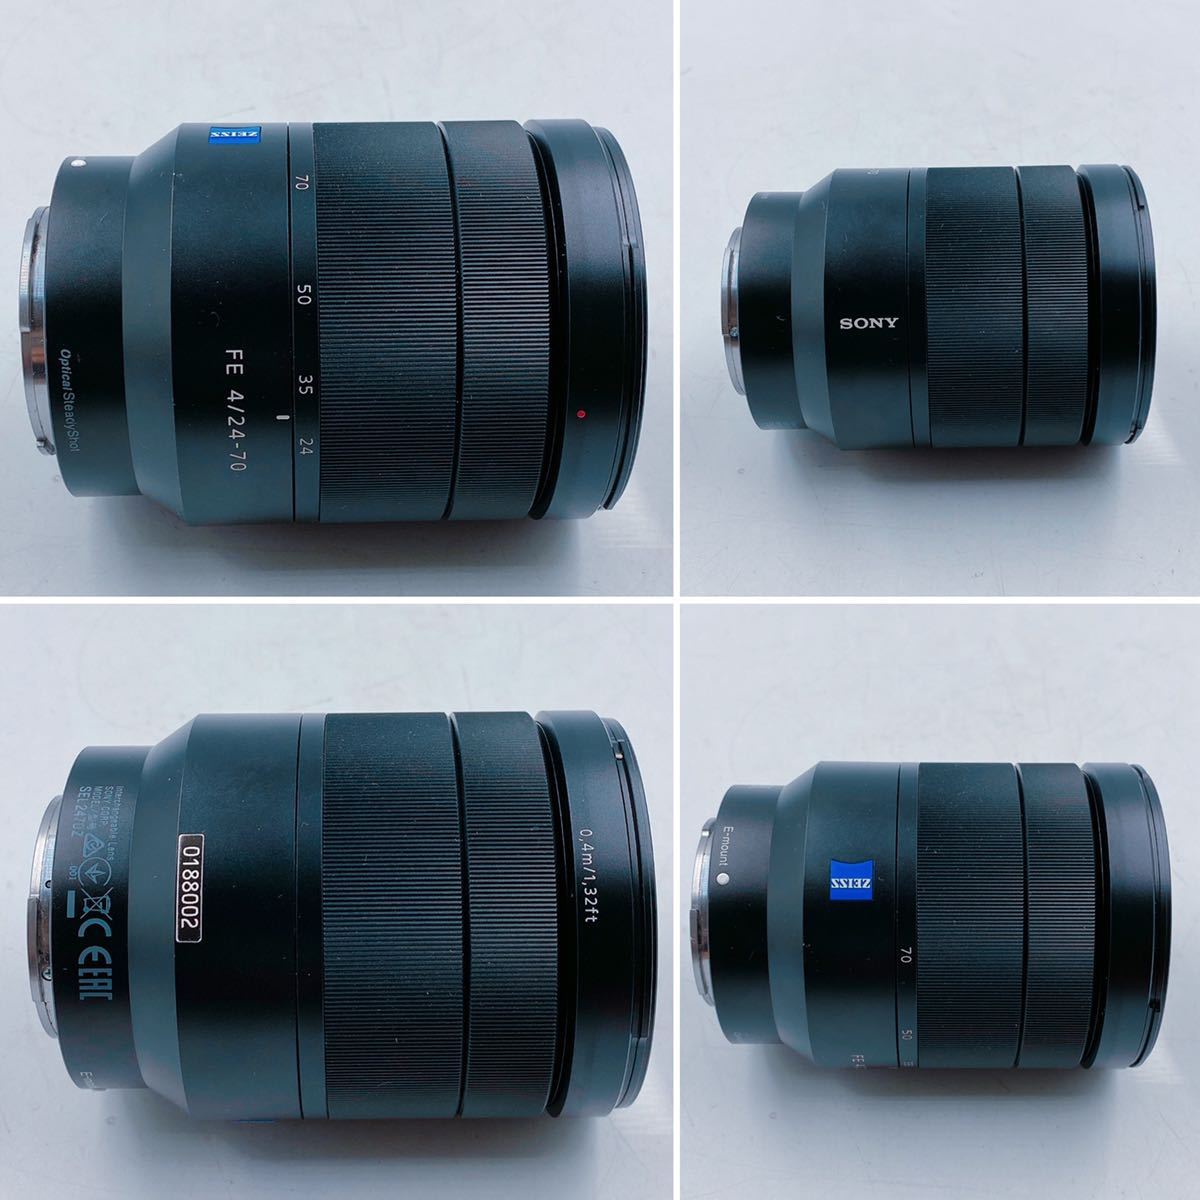 6D89 SONY Sony lens Vario-Tessar T* FE 24-70mm F4 ZA OSS E-mount camera small size light weight operation not yet verification 